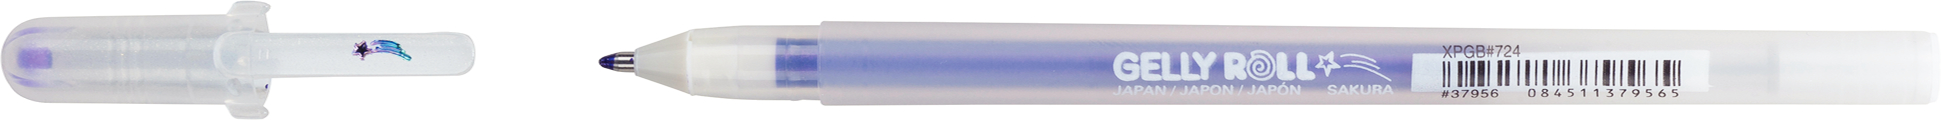 SAKURA Gelly Roll 0.5mm XPGB724 Stardust purpur Glitter